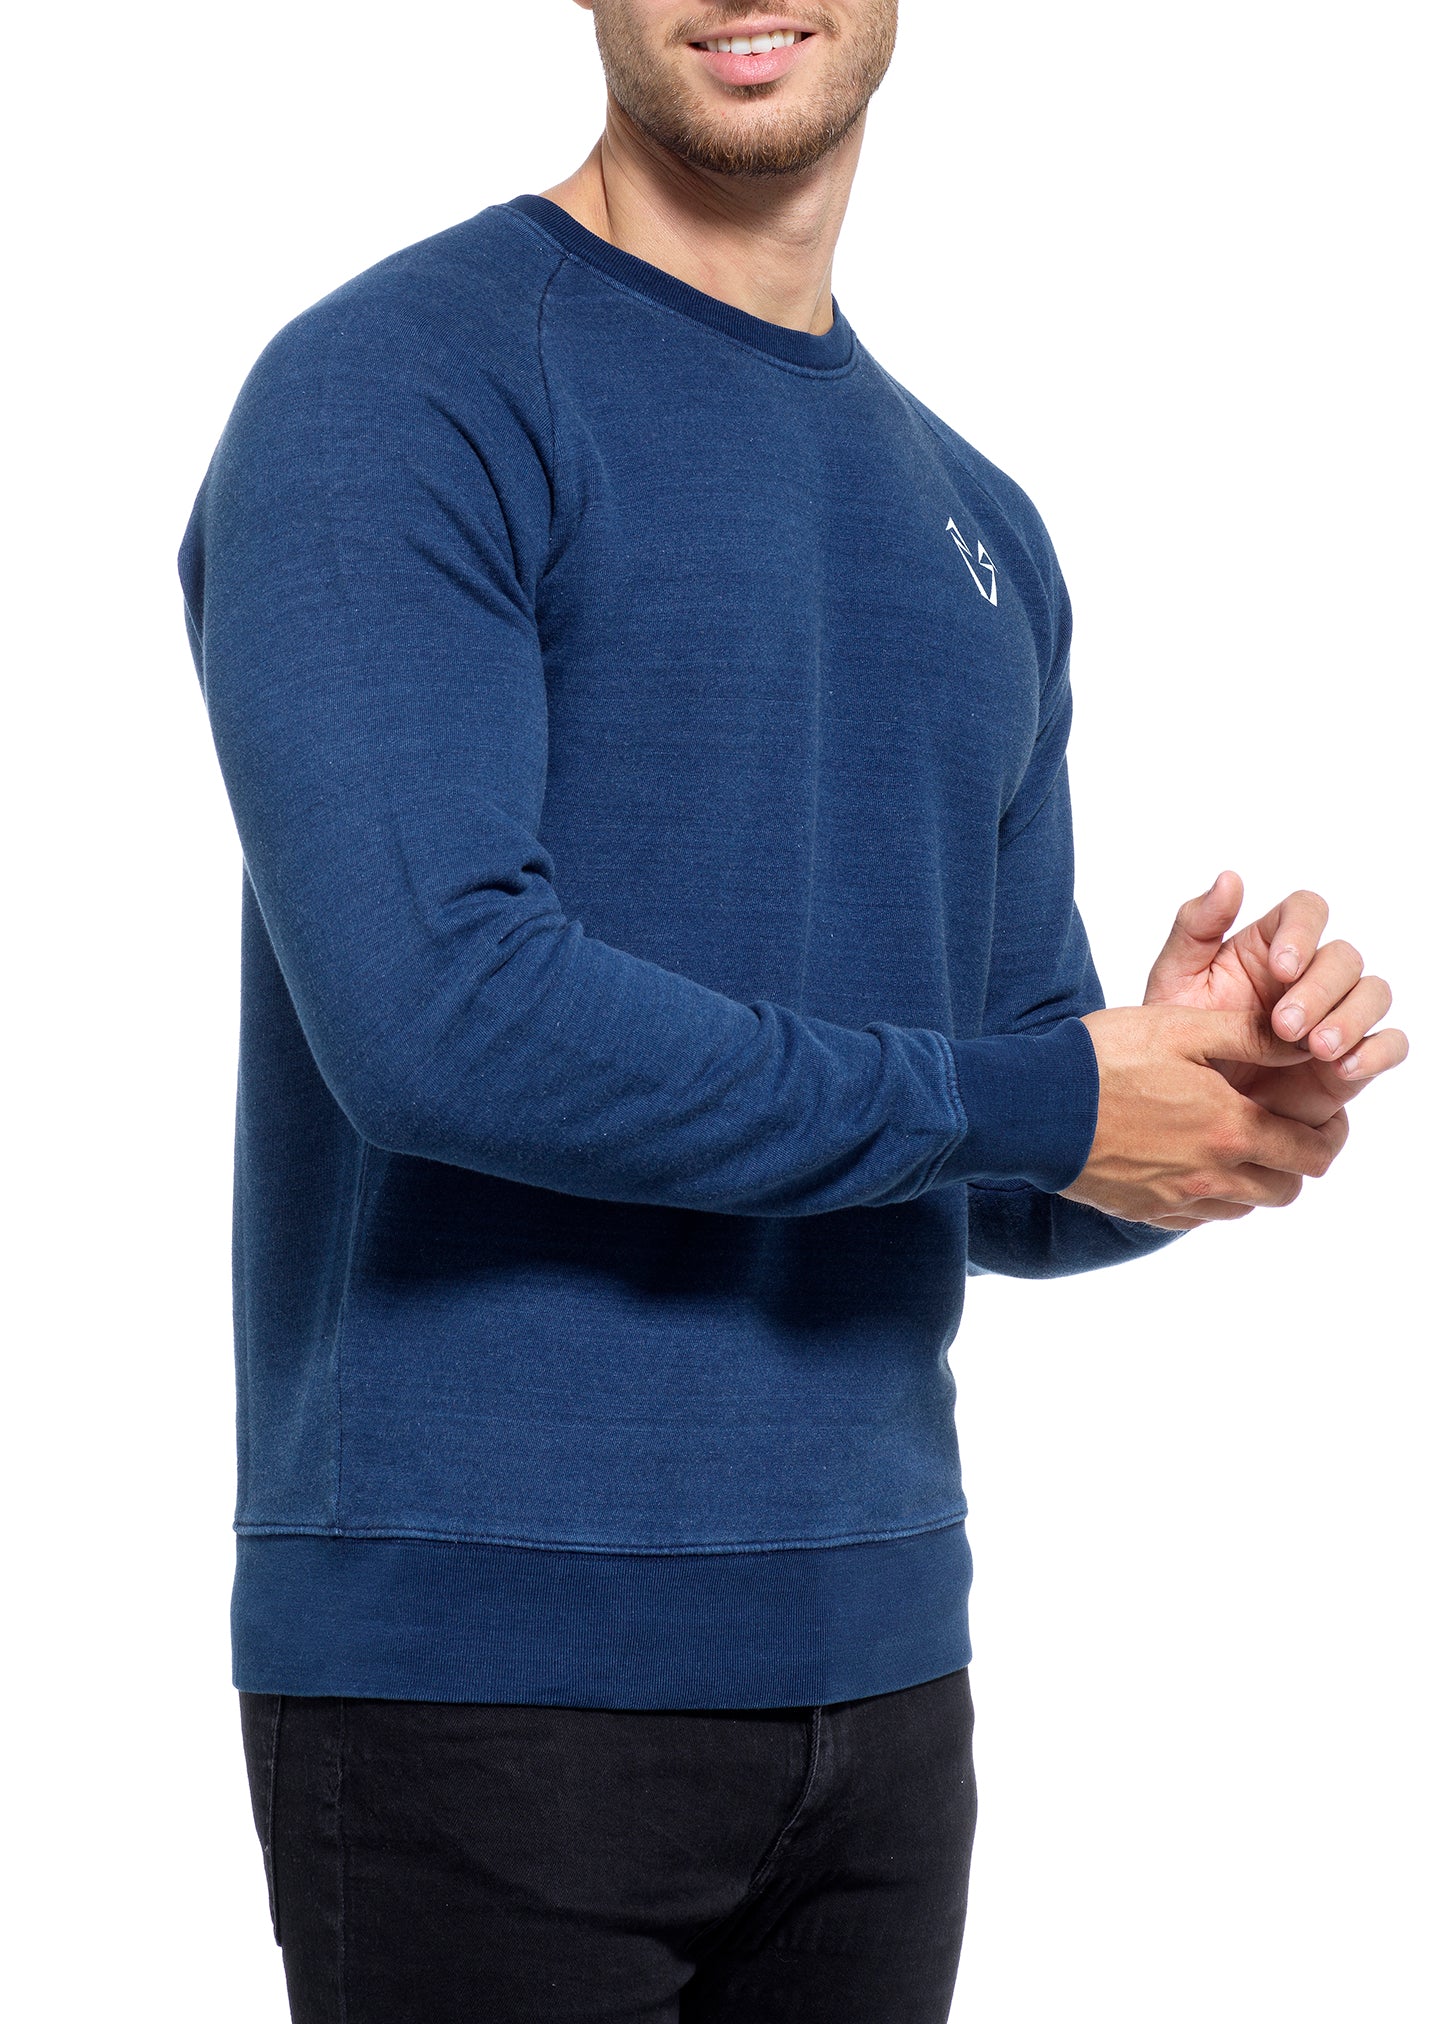 Muscle Fit Sweatshirt